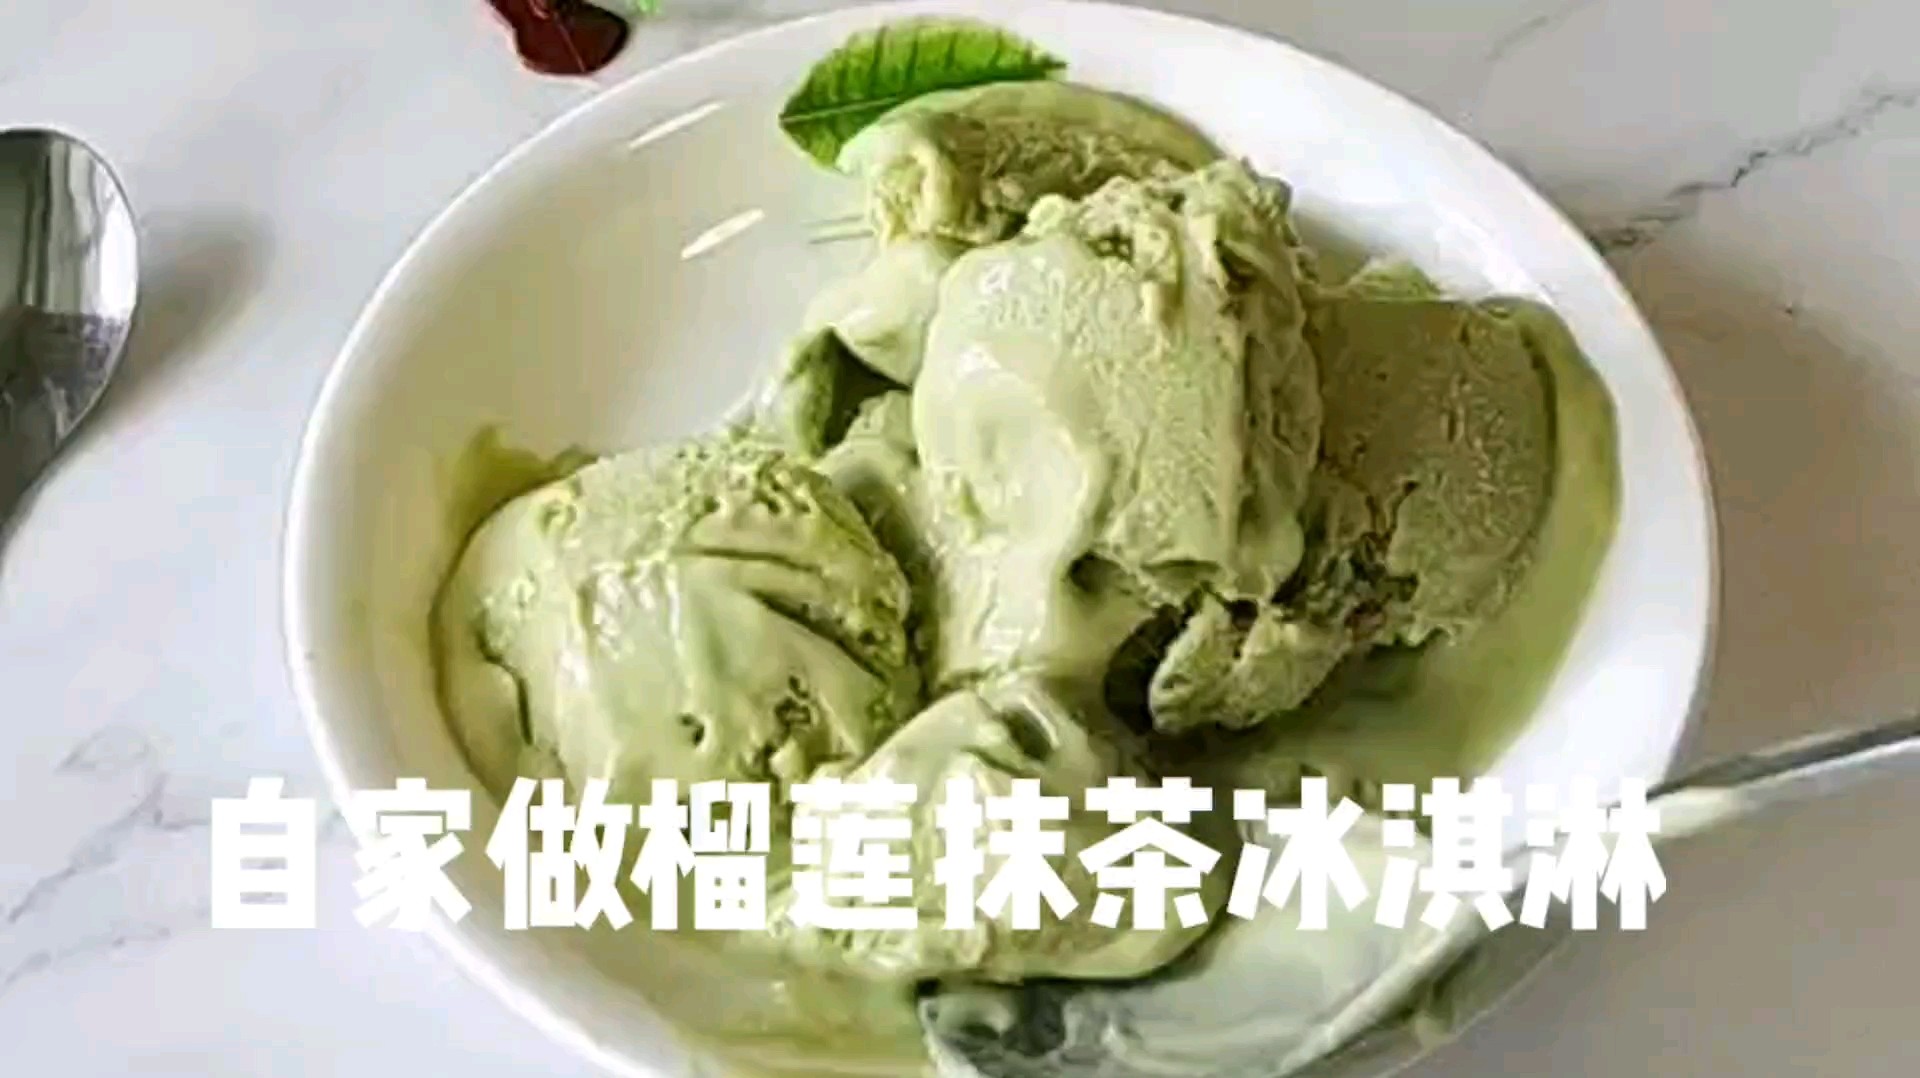 Homemade Durian Matcha Ice Cream recipe